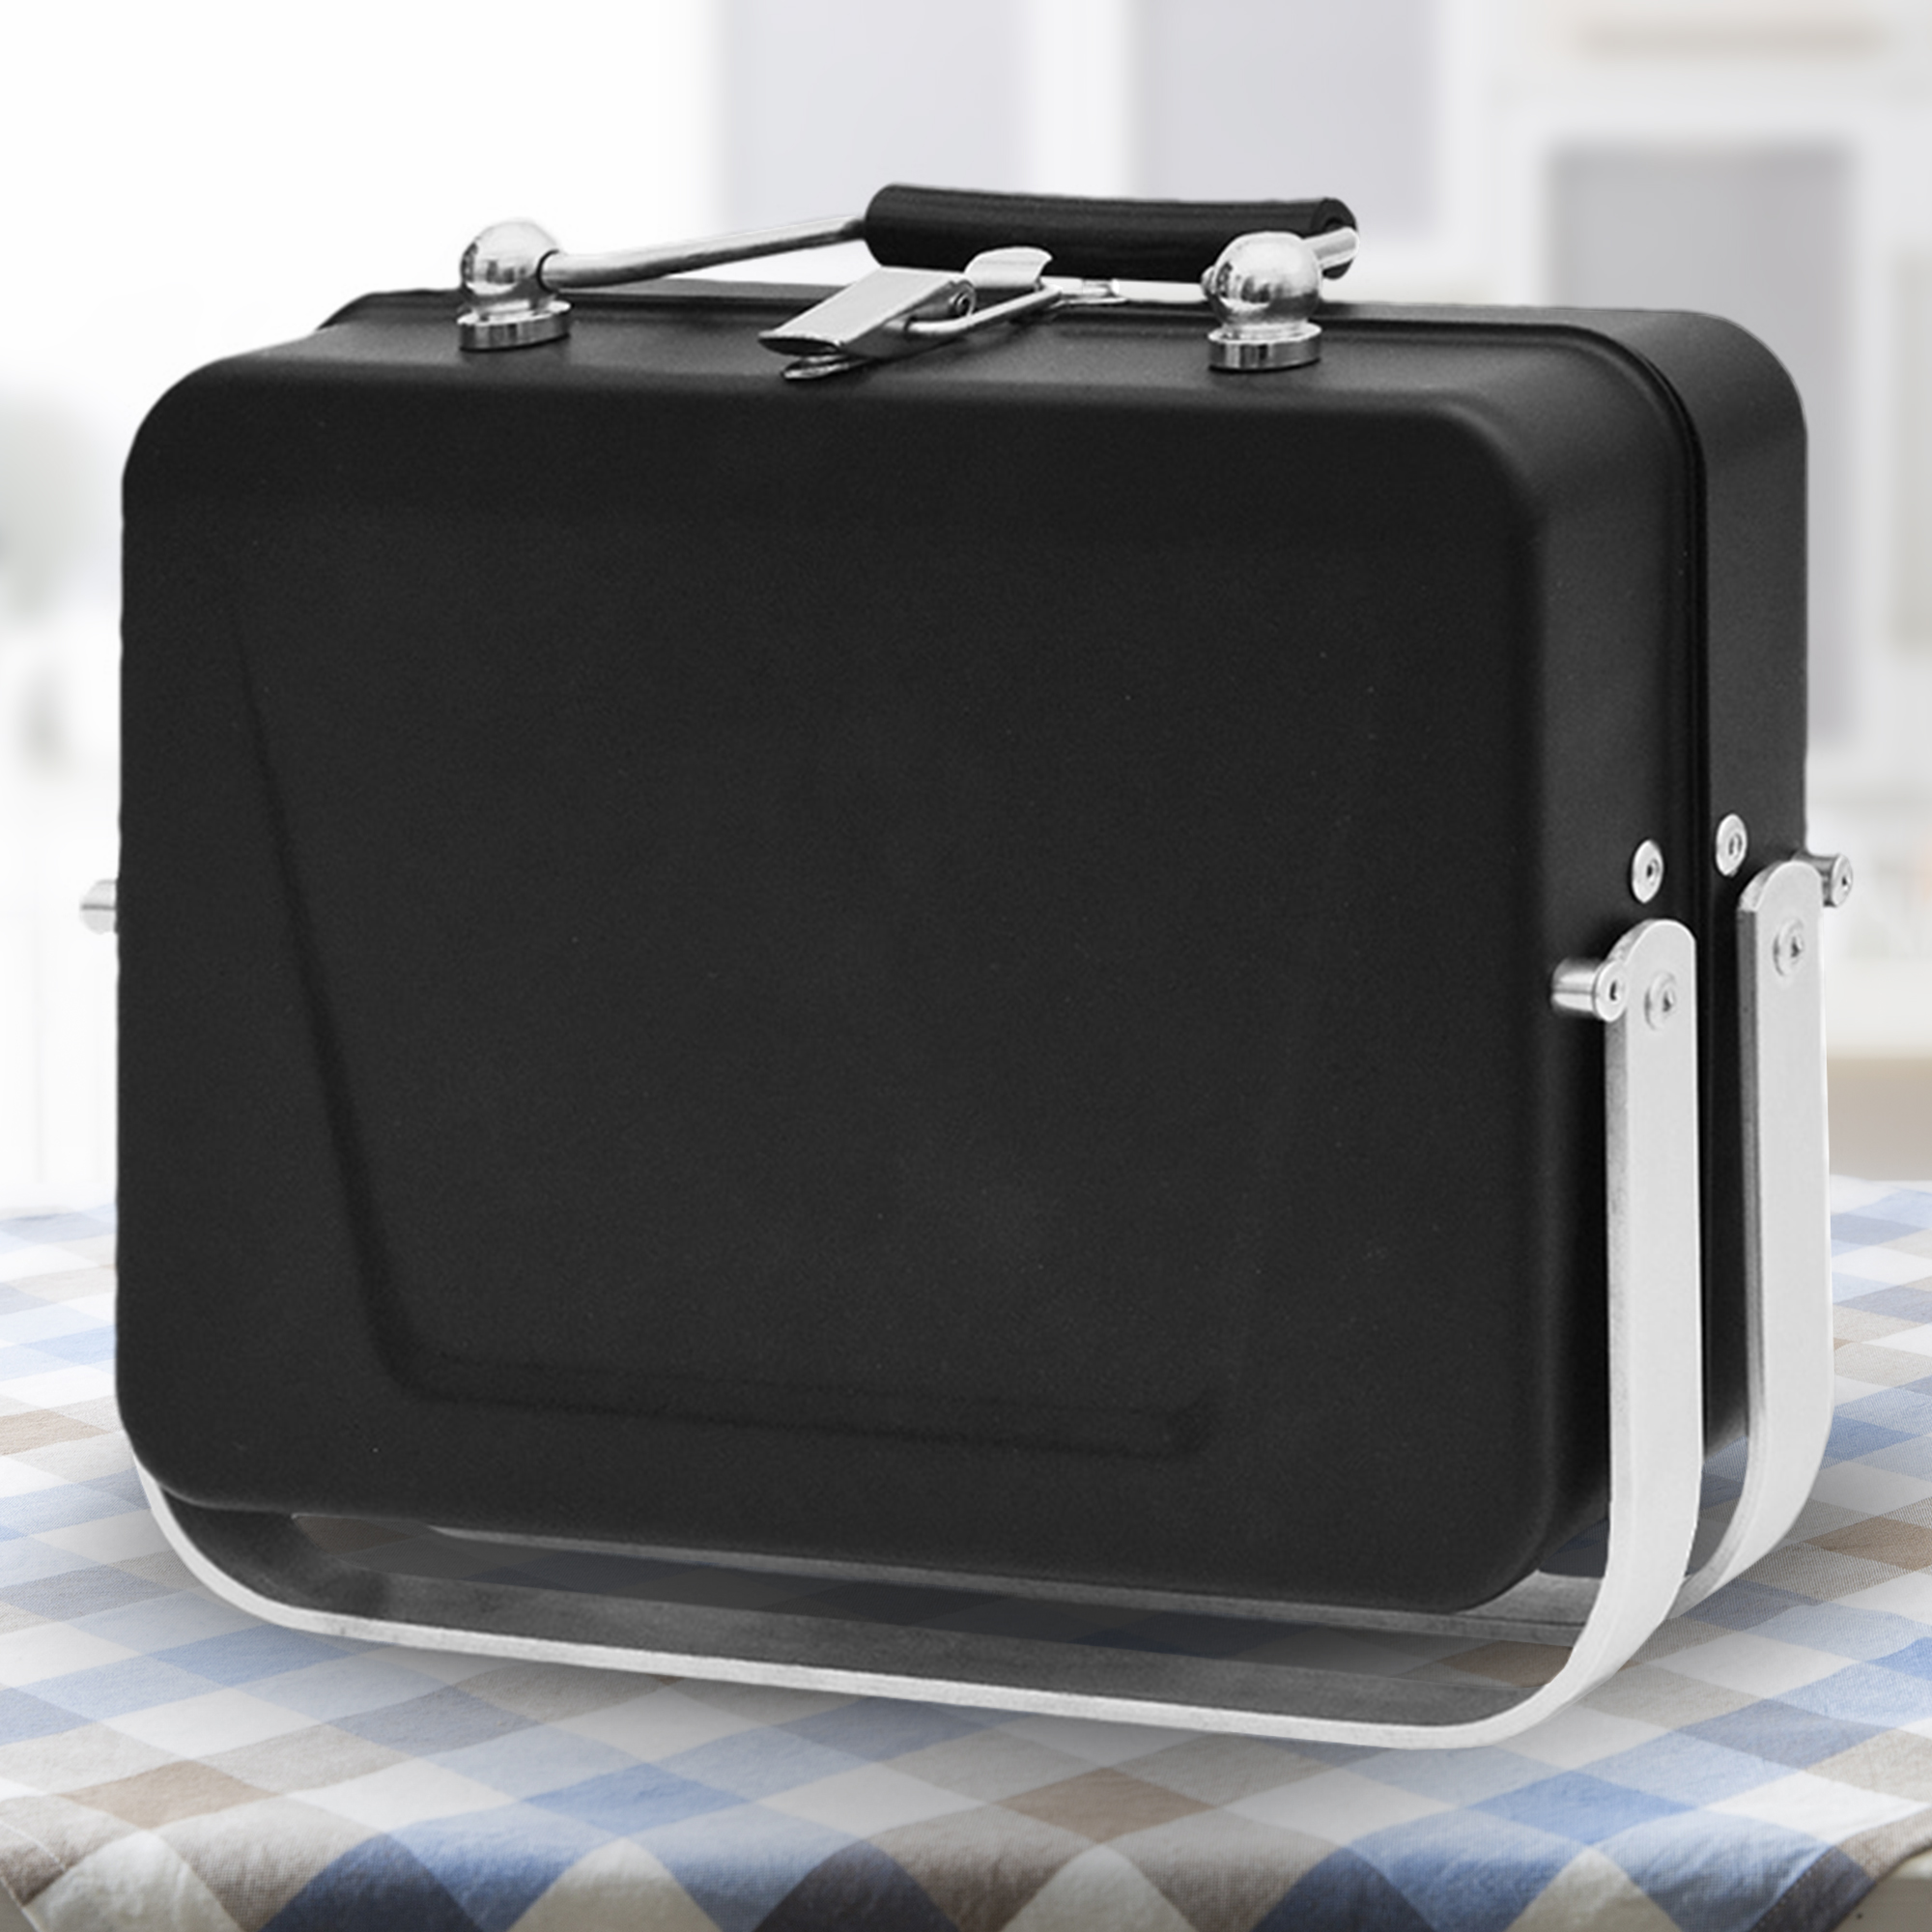 Kompakter Mini Grill - Holzkohlegrill im Koffer 2